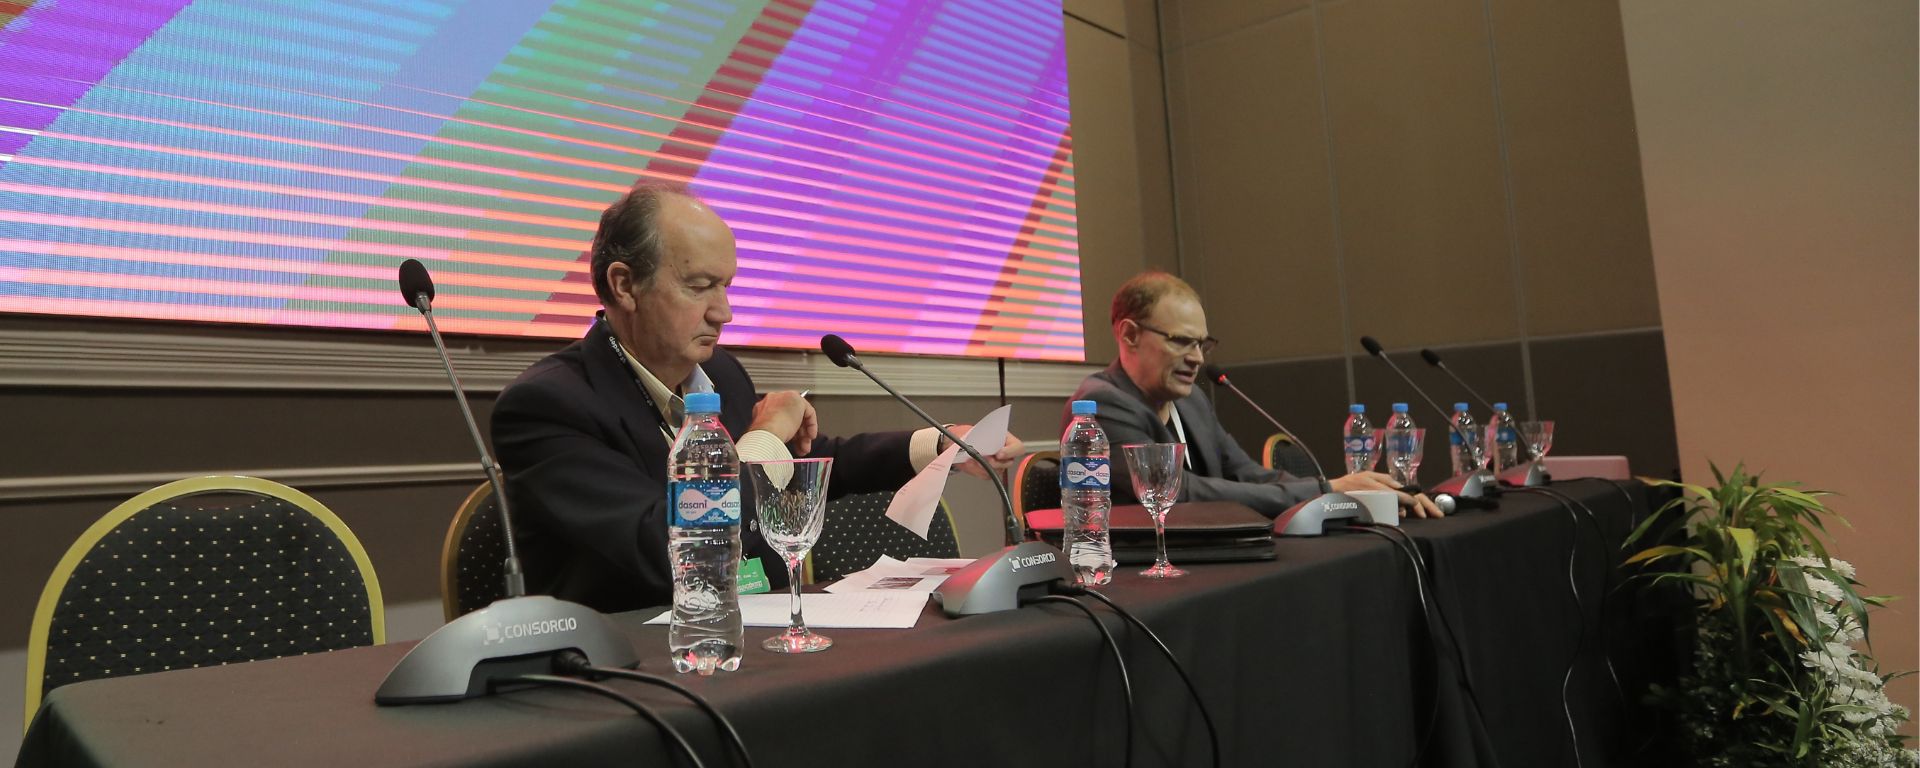 Nicolás Eycheverry en mesa de expositor junto a otro expositor, frente a micrófono (pantalla gigante detrás)